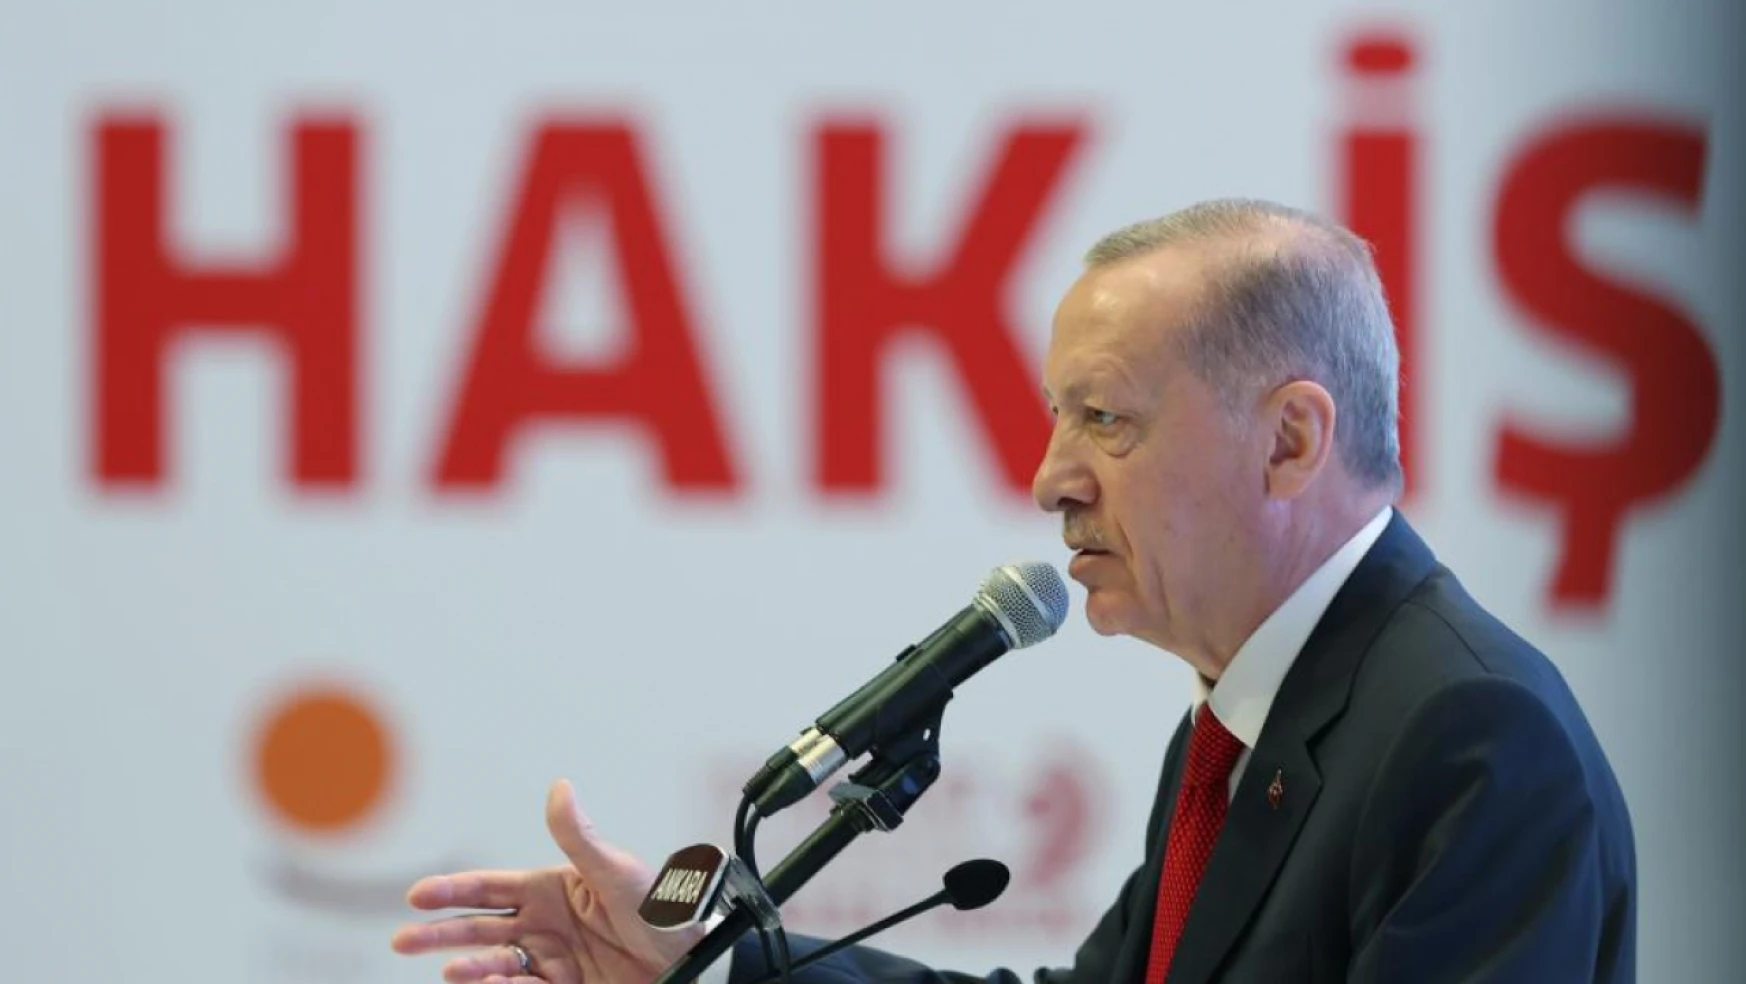 Cumhurbaşkanı Erdoğan en düşük memur maaşını açıkladı